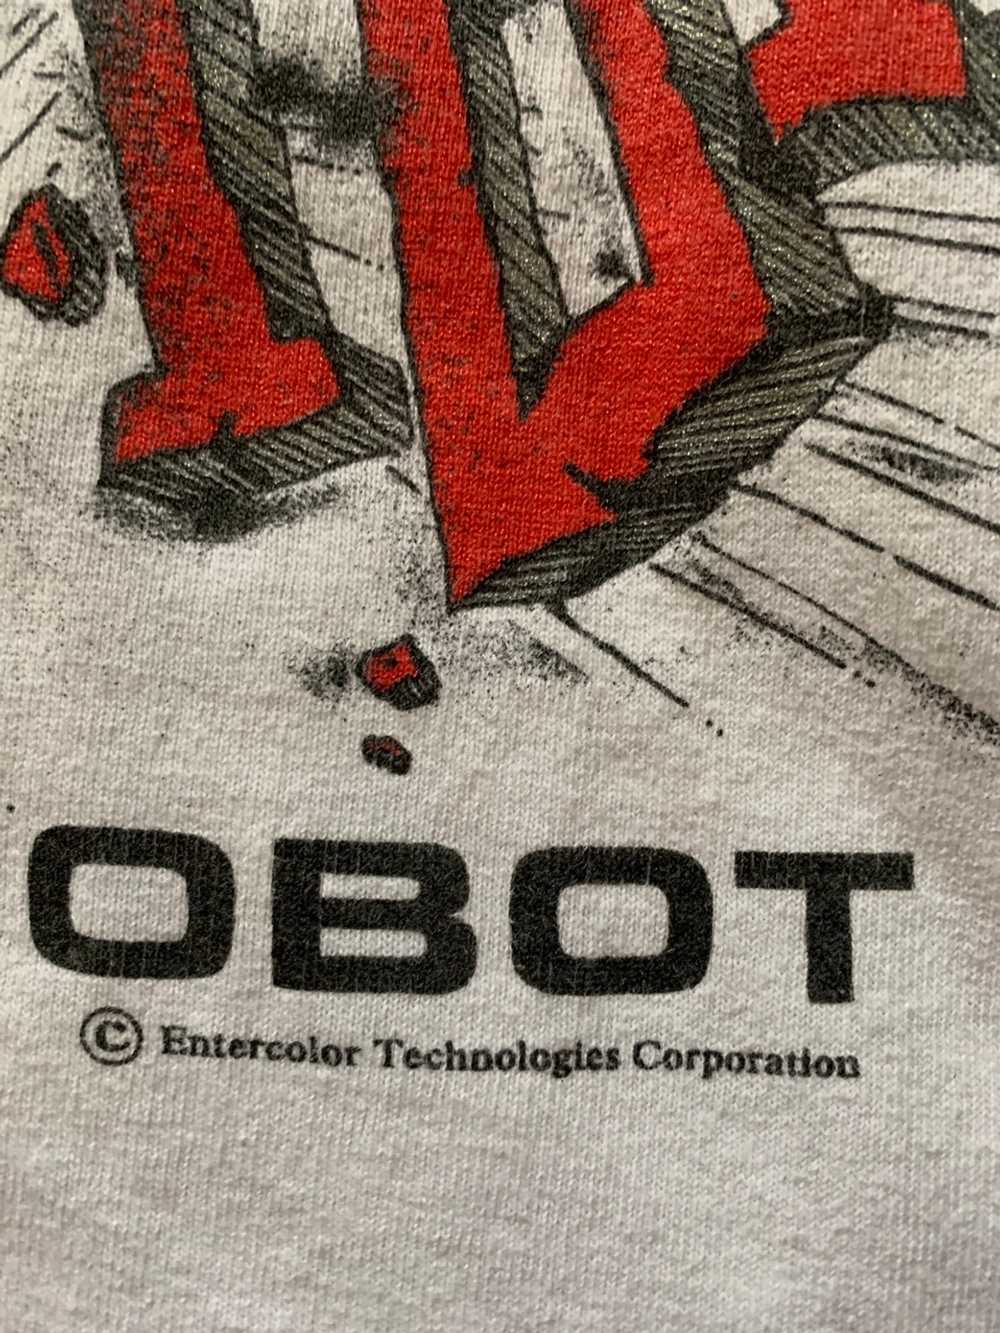 Vintage Gigantor space age robot vintage 90s shirt - image 3